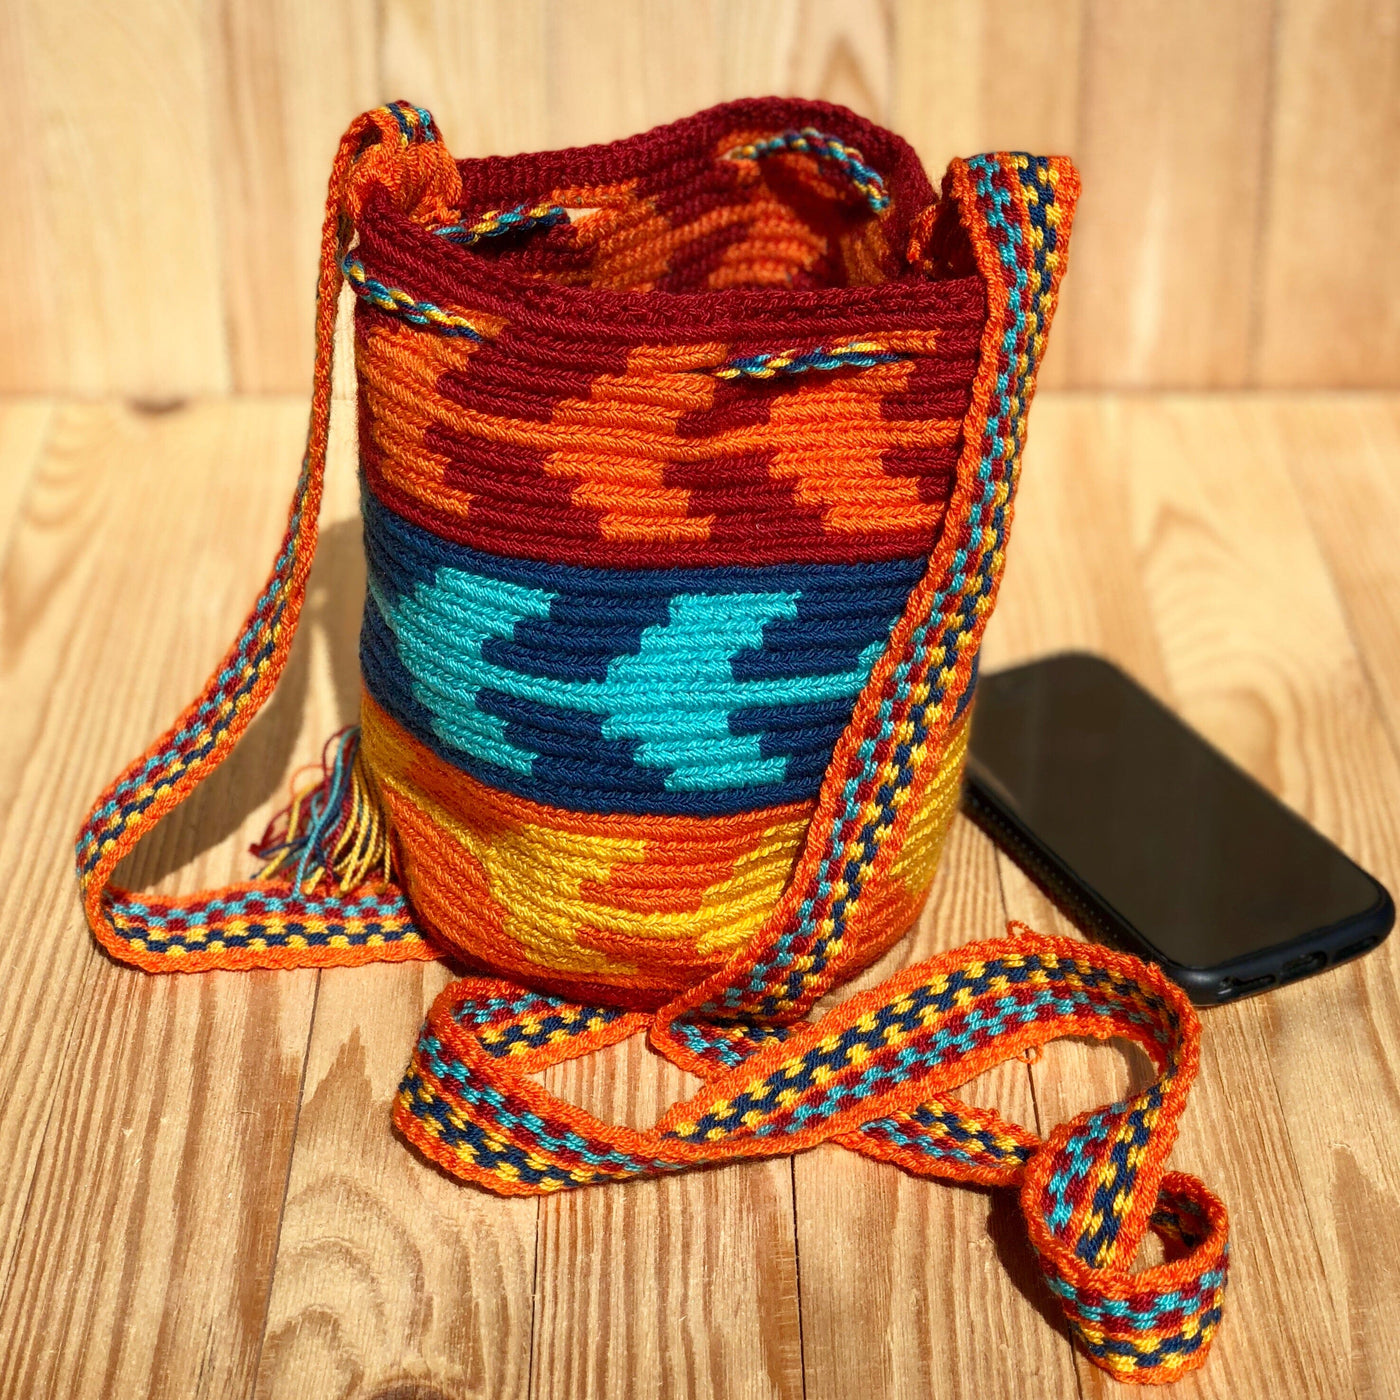  Mini Crochet Bags - Authentic Wayuu Mochila Bag - Summer Sunset colors